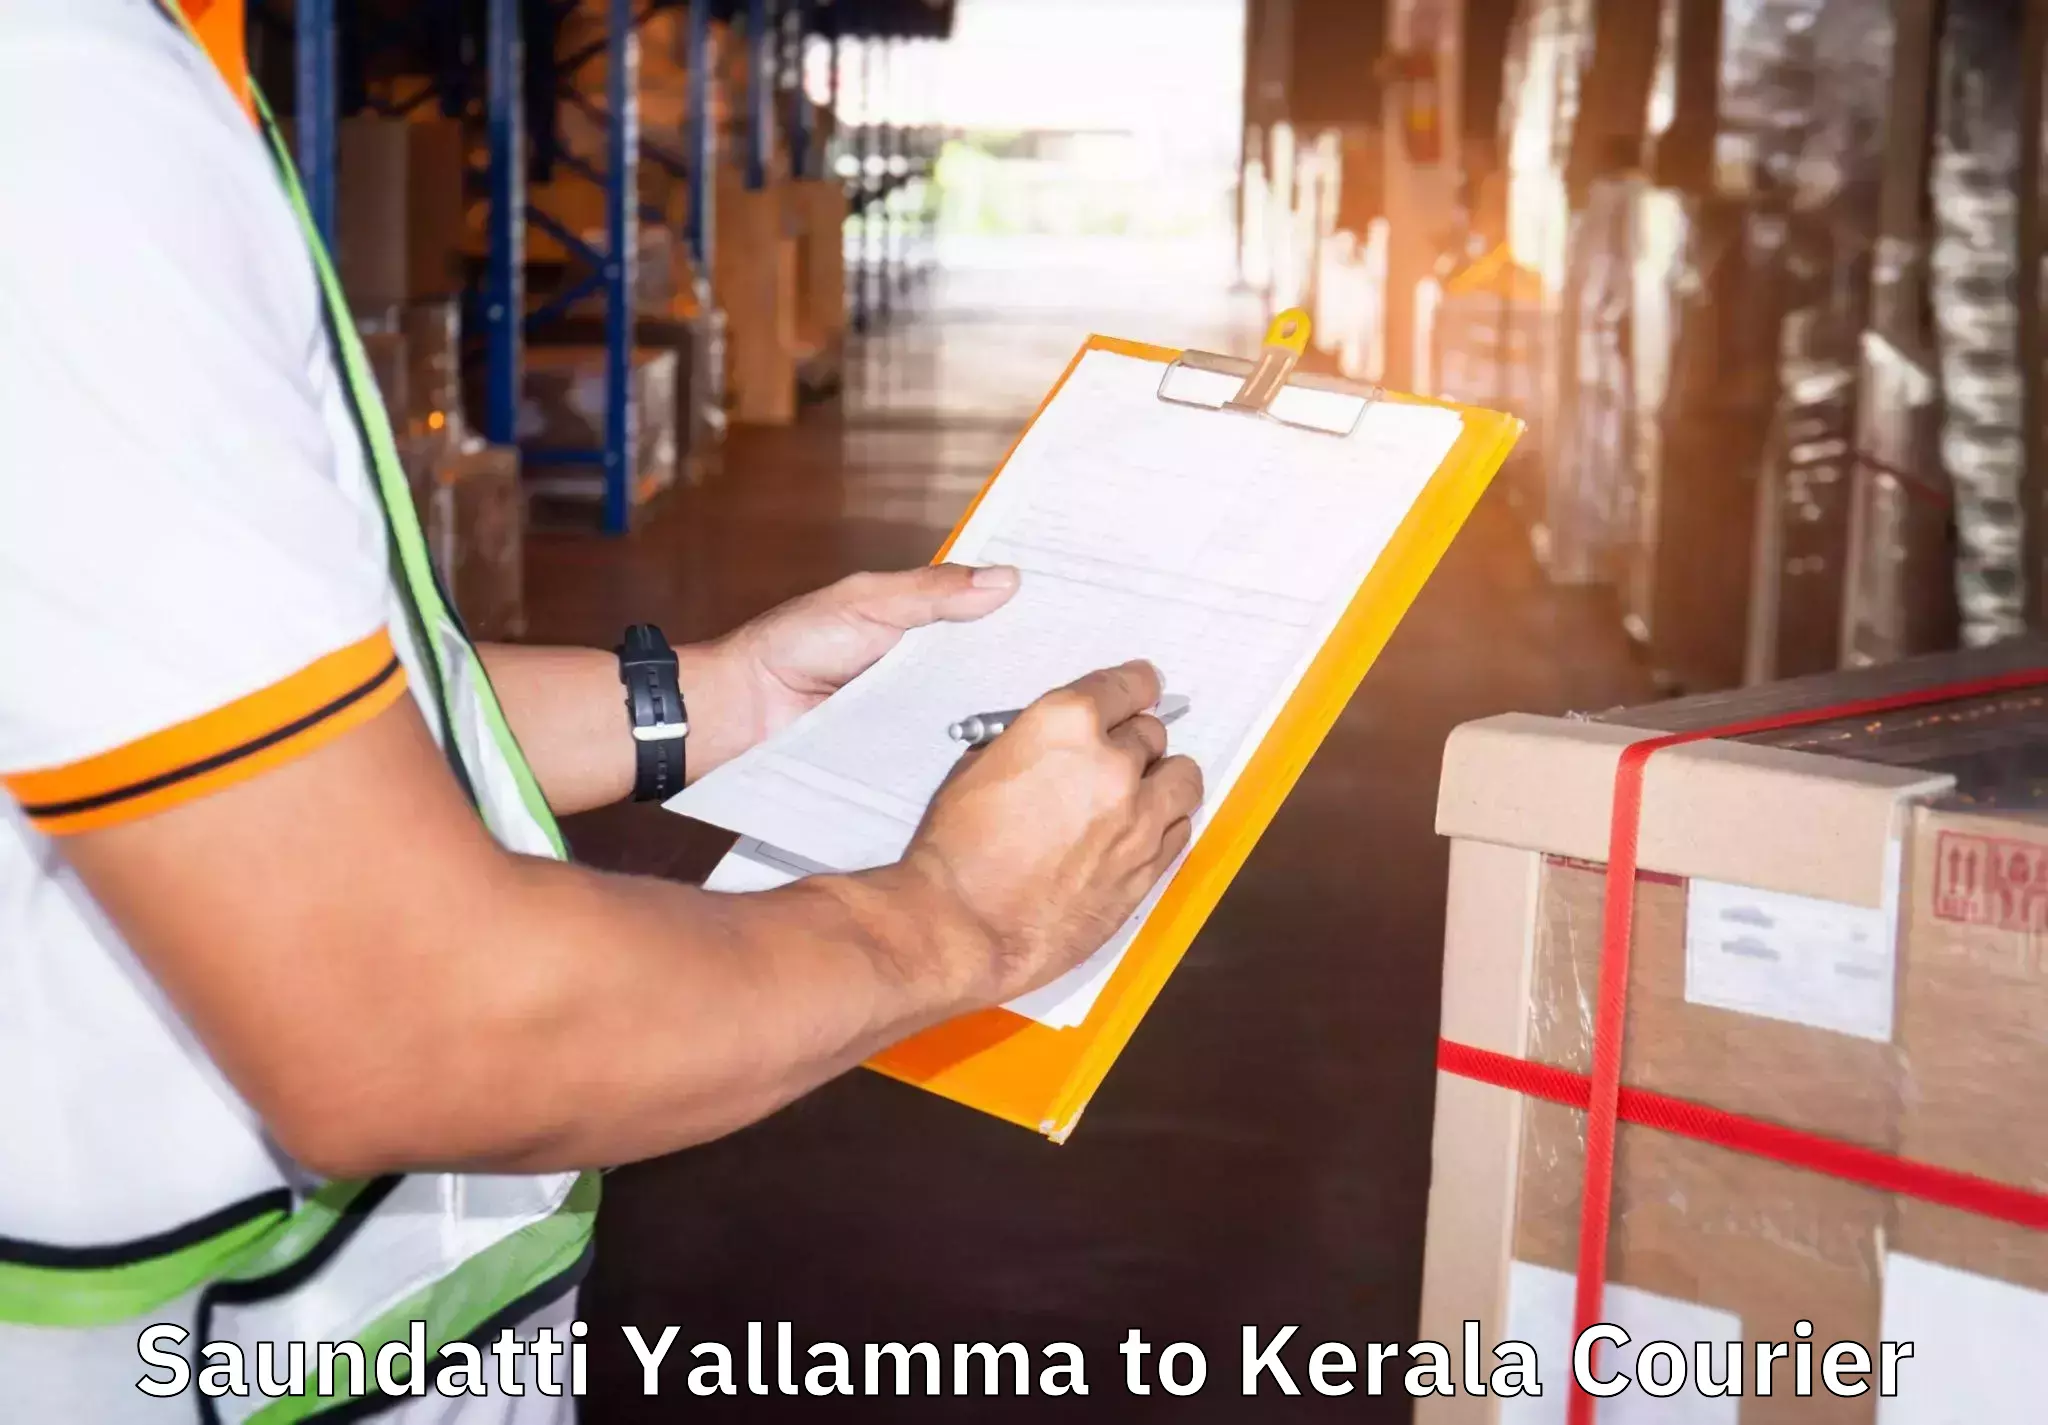 Quick moving services Saundatti Yallamma to Kerala